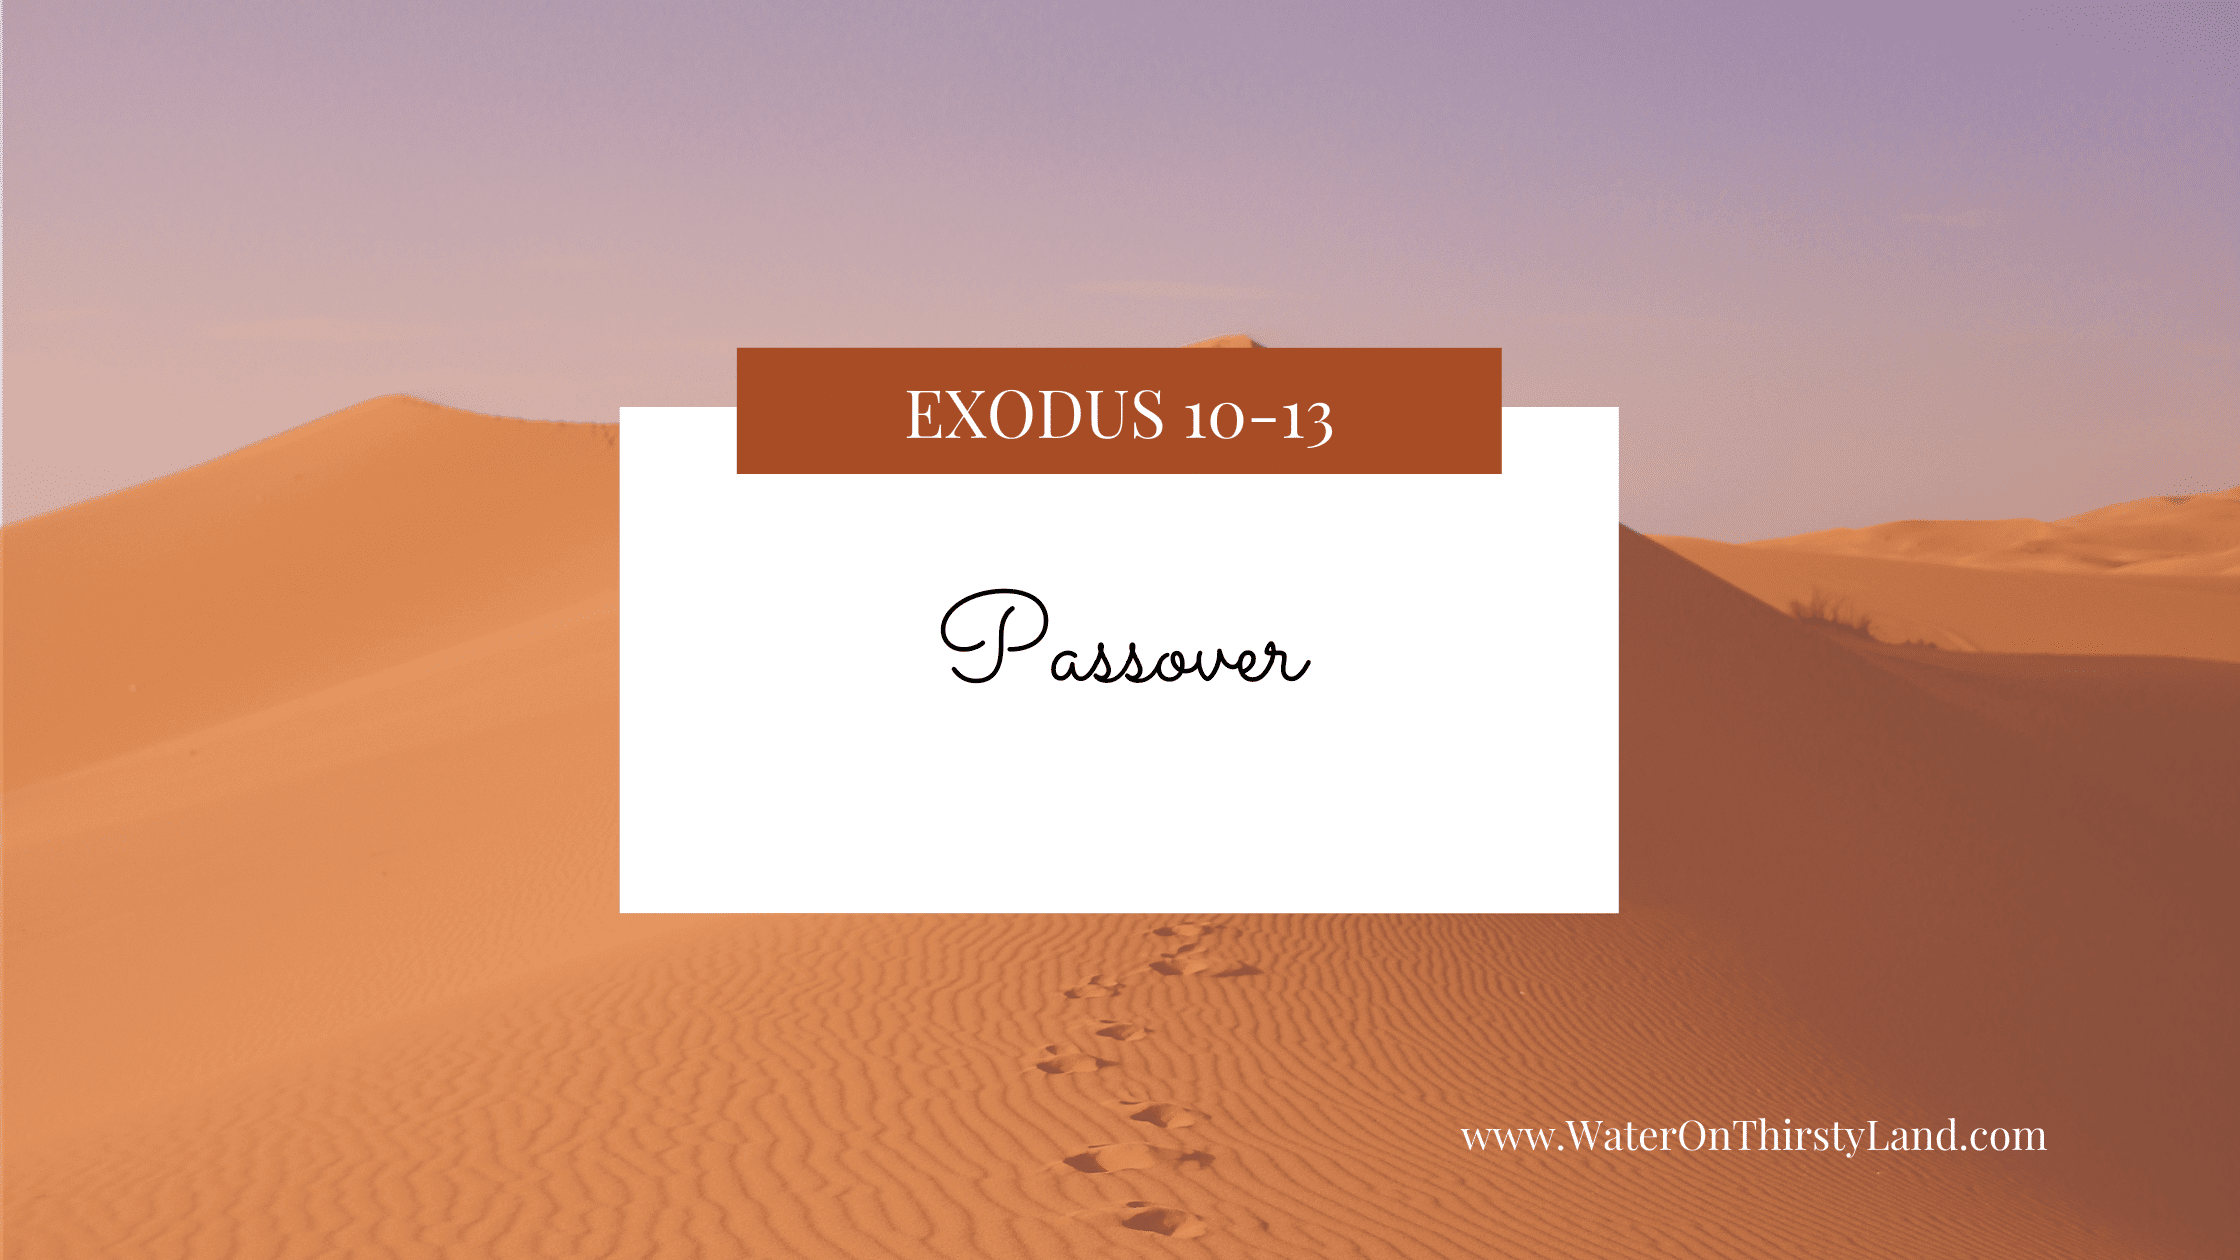 Exodus 10-13: Passover